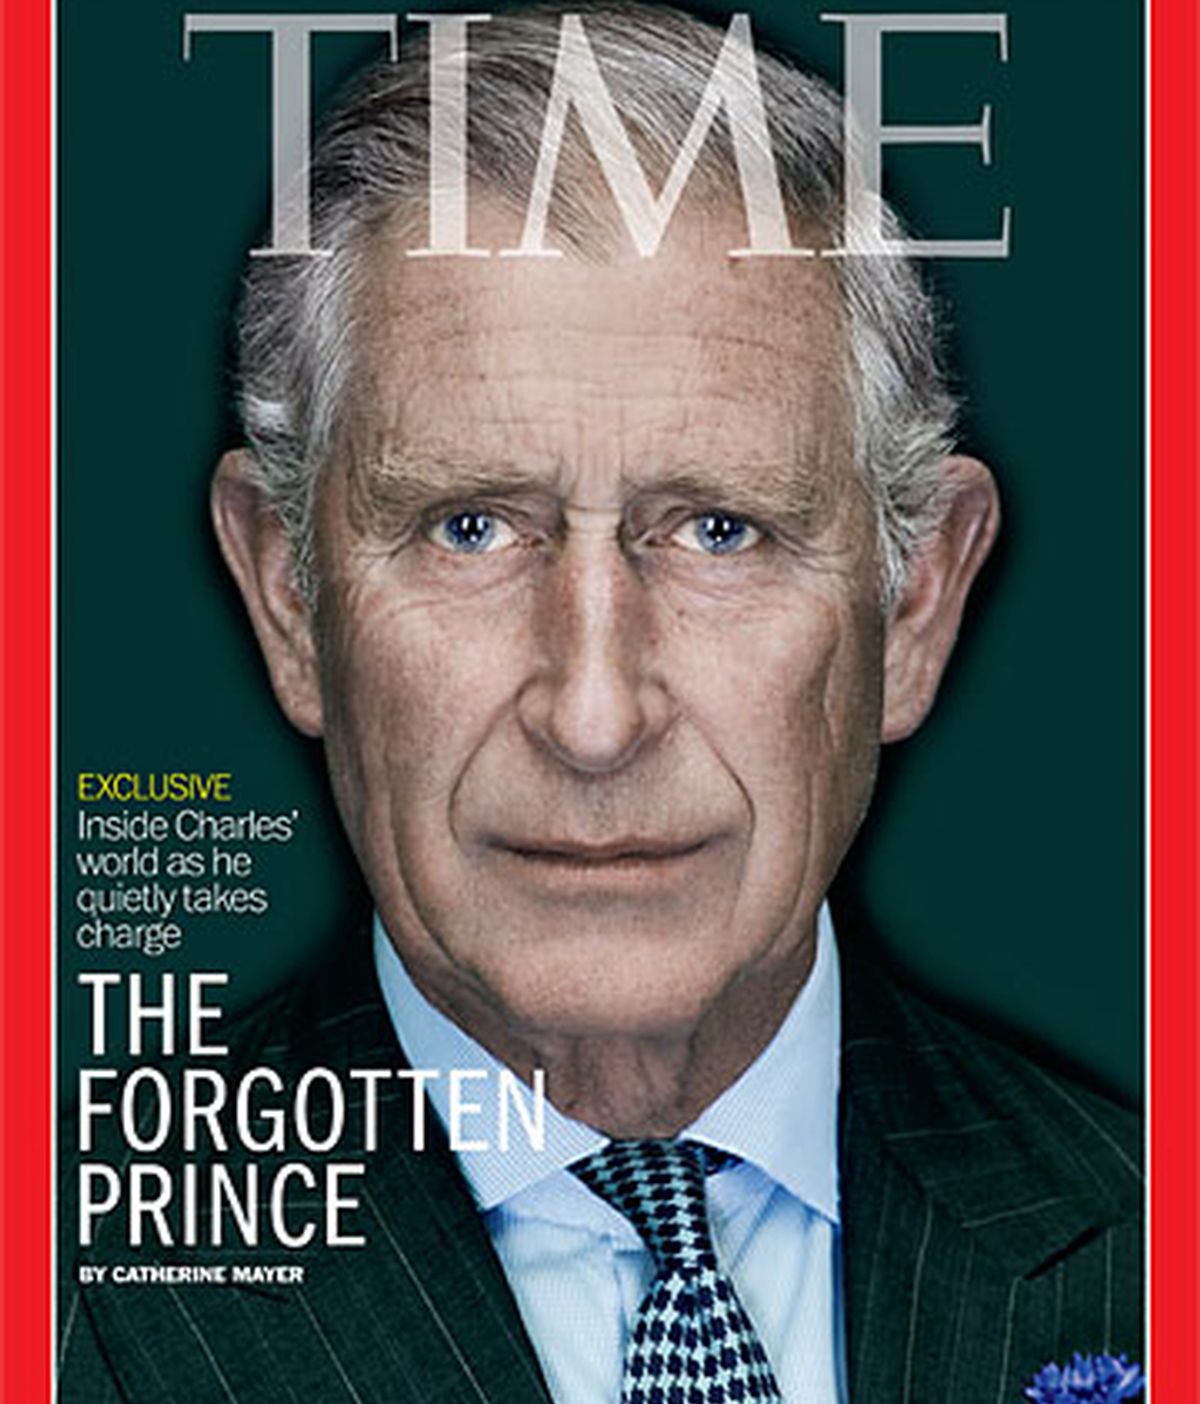 Portada de la revista Time que dedicó un especial al príncipe Carlos de Inglaterra